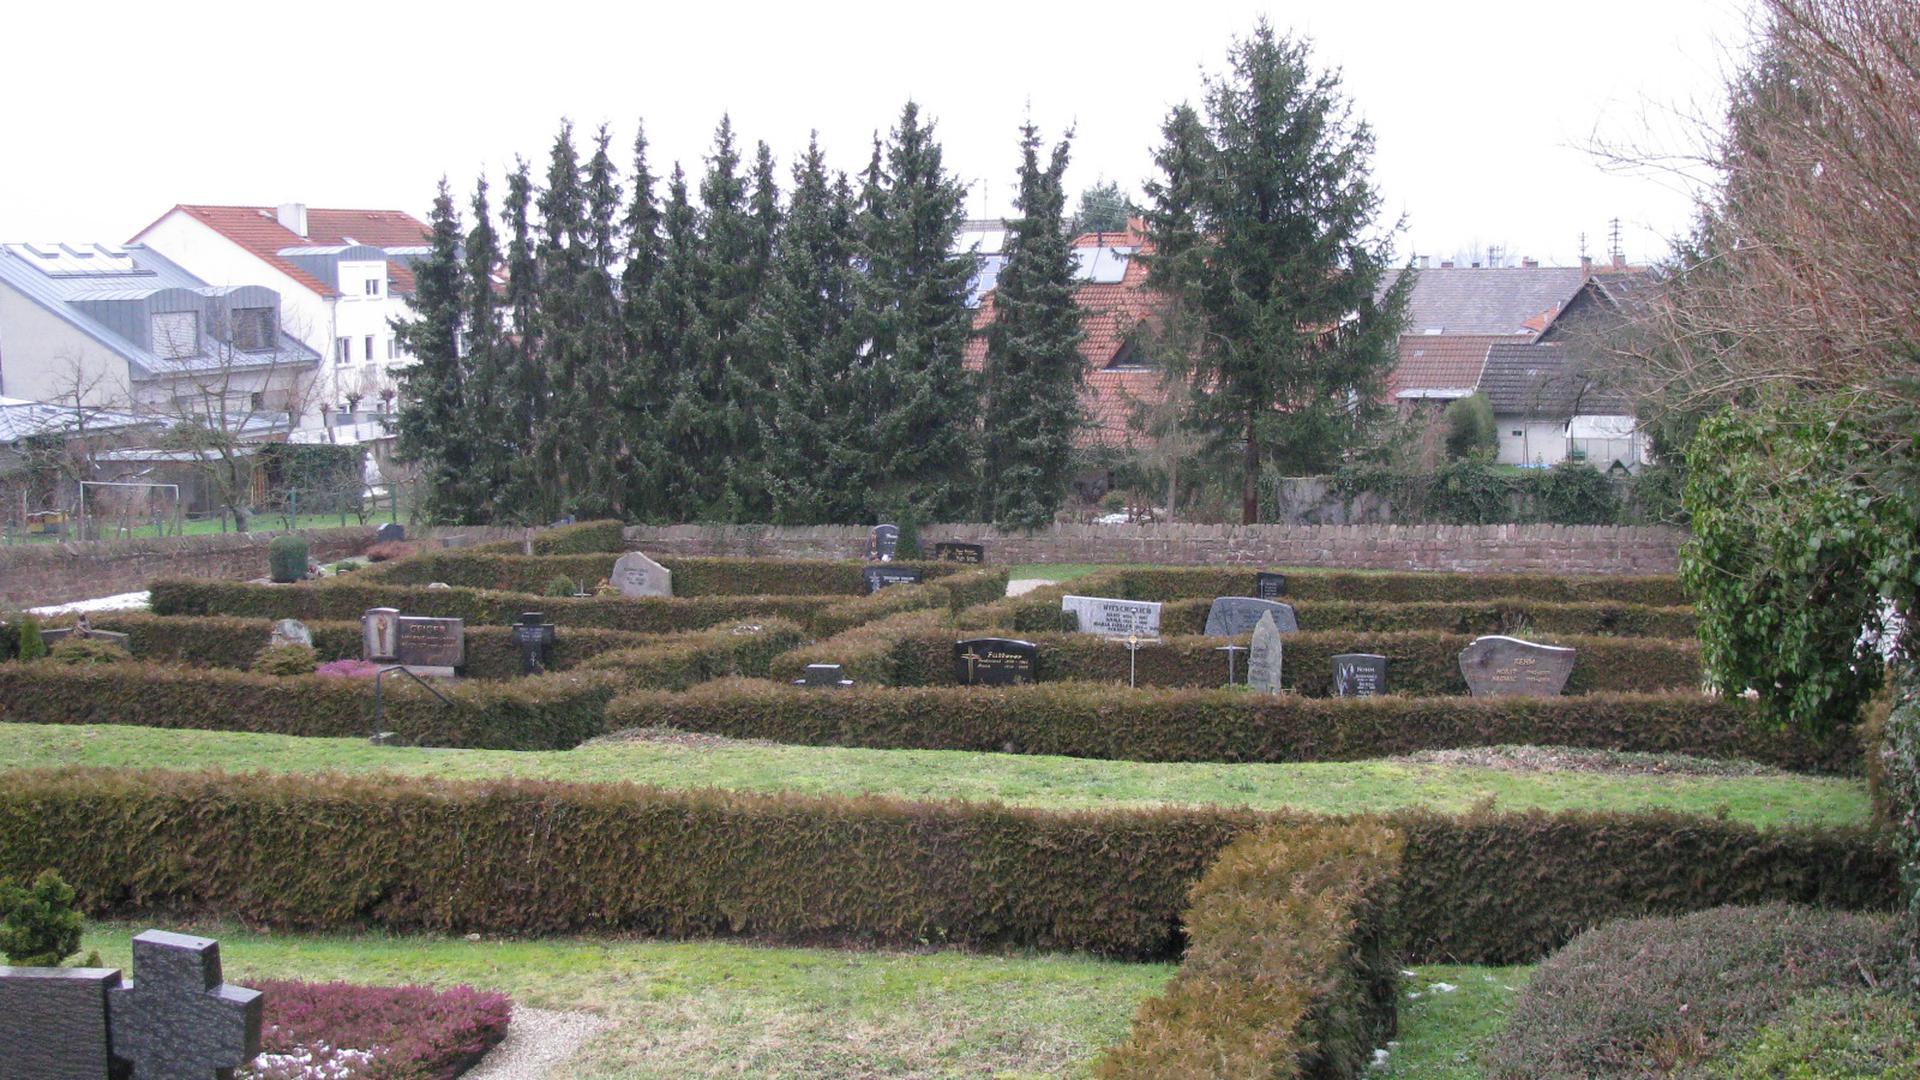 Ehemaliges Ruhrgräberfeld auf dem Friedhof Malsch, welches 1952 geräumt wurde.